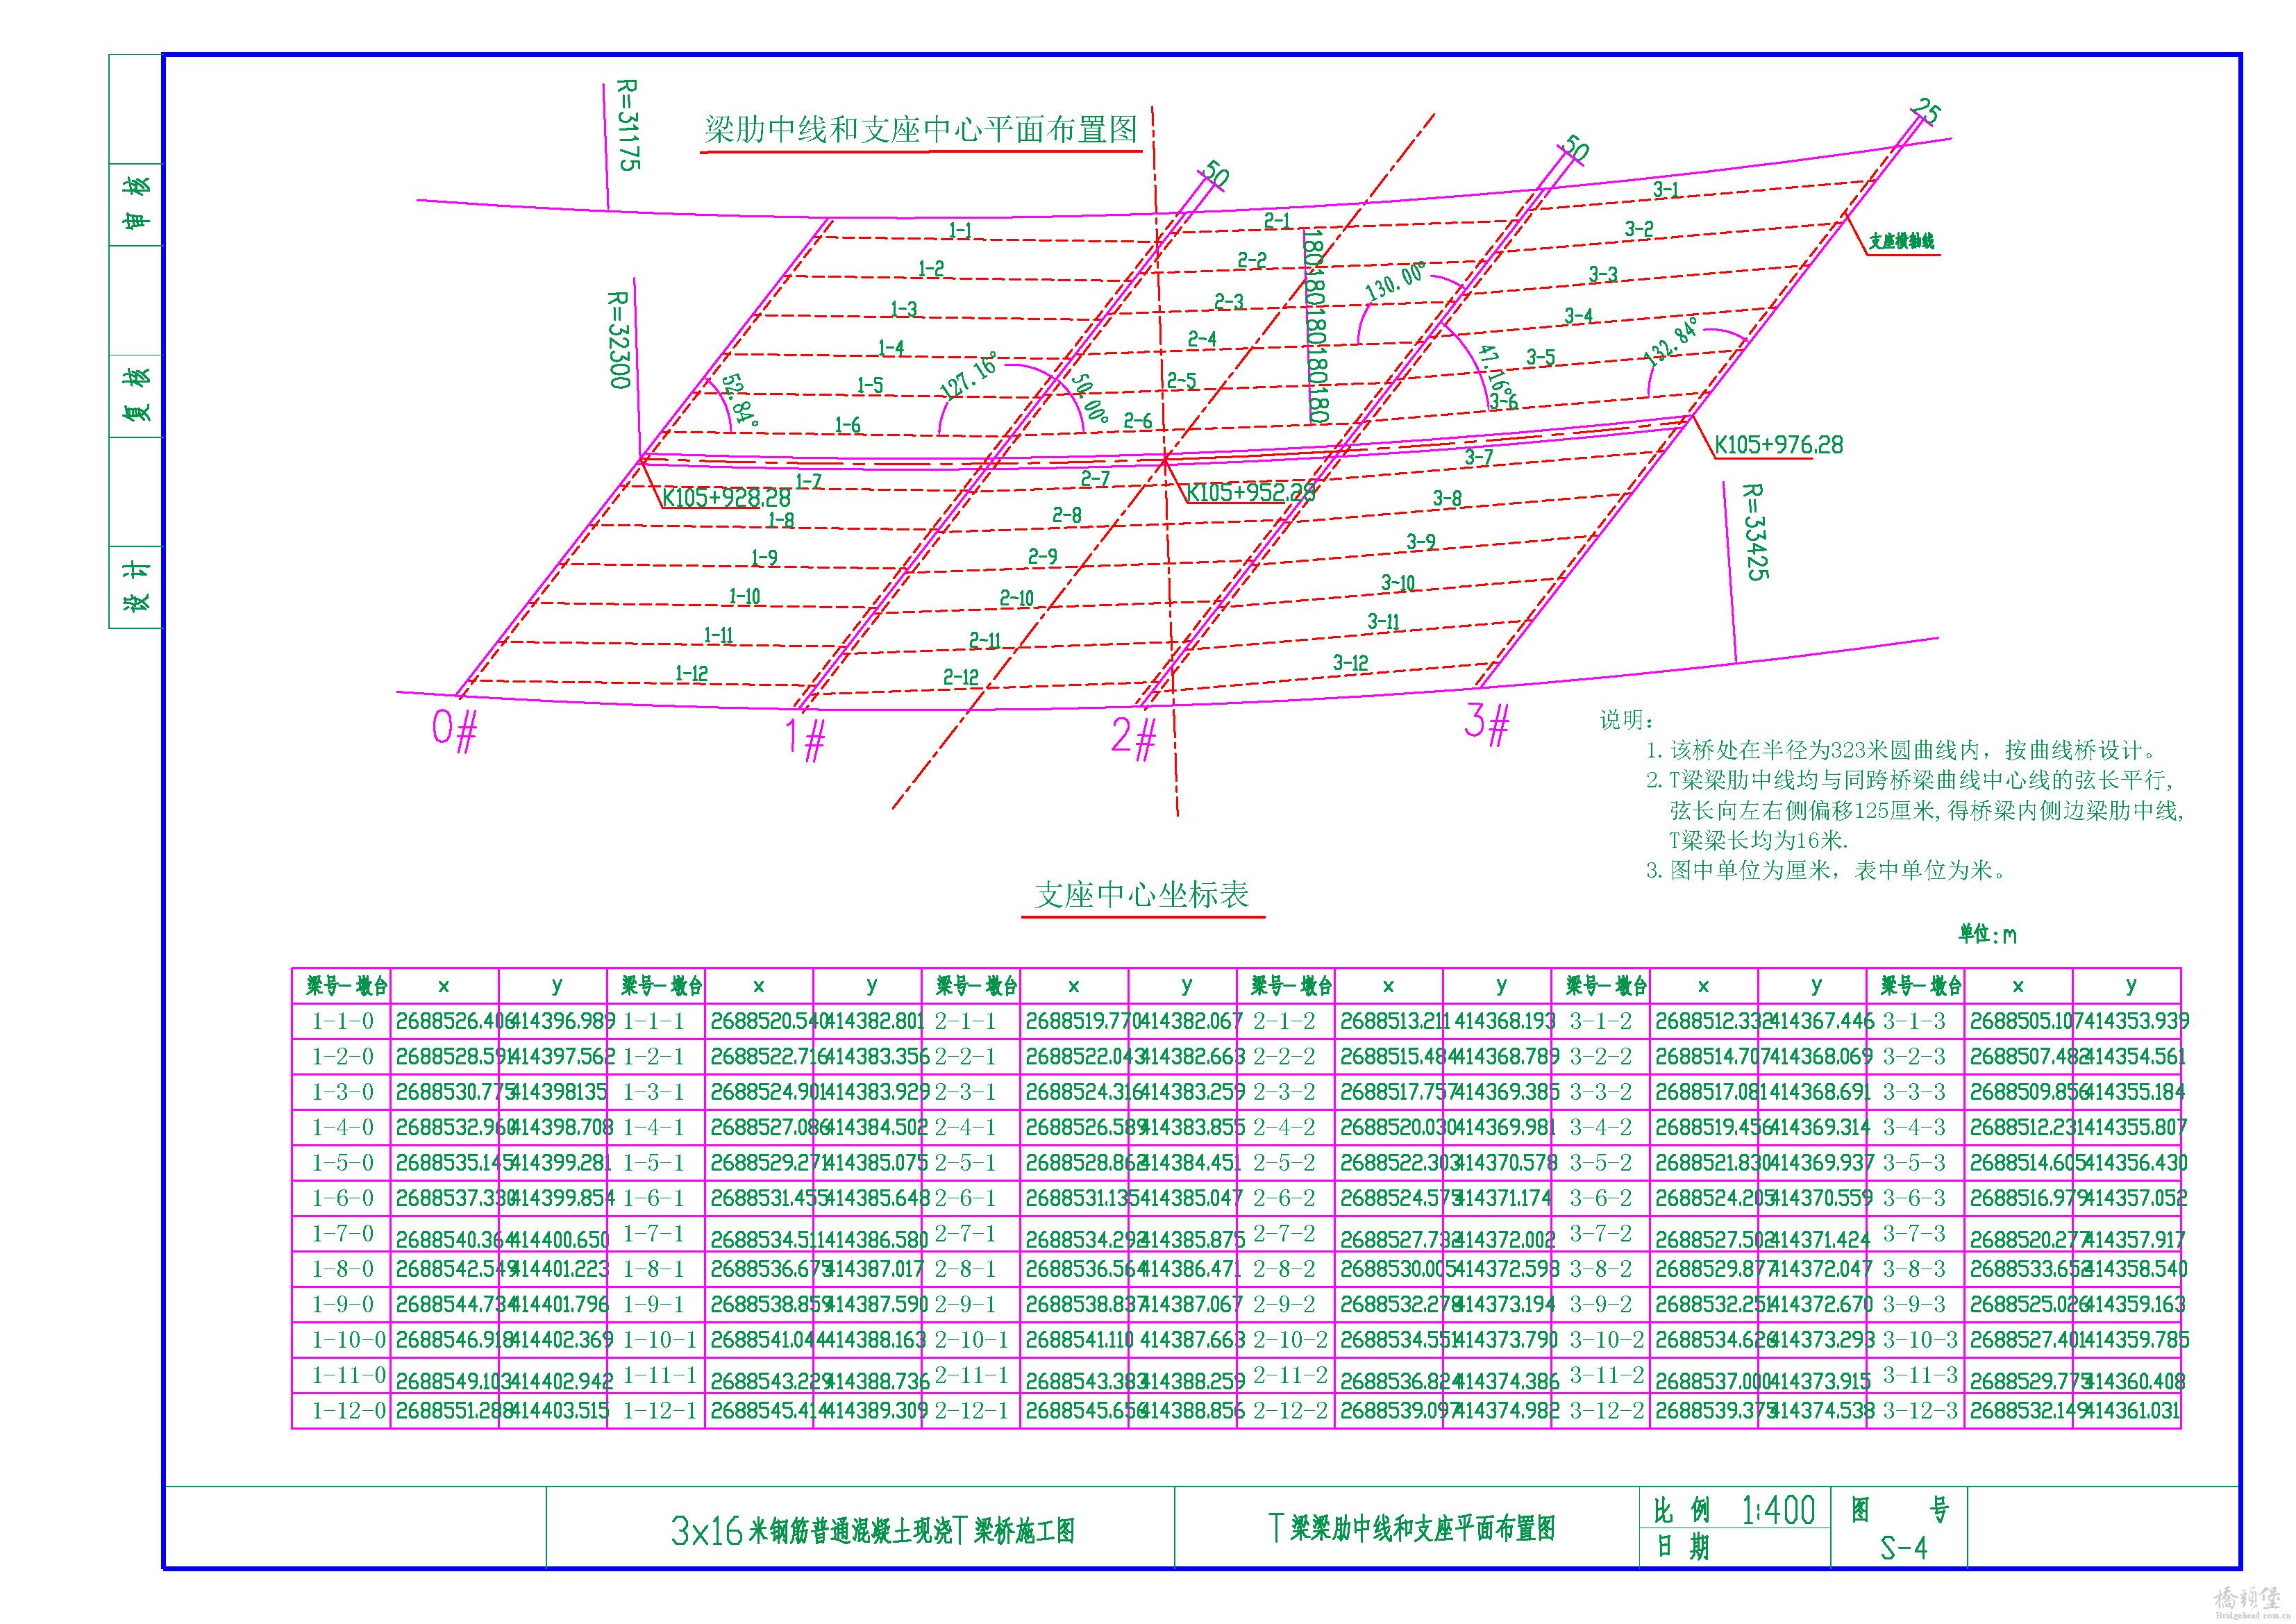 04-T梁梁肋和支座平面布置图 Model (1).jpg